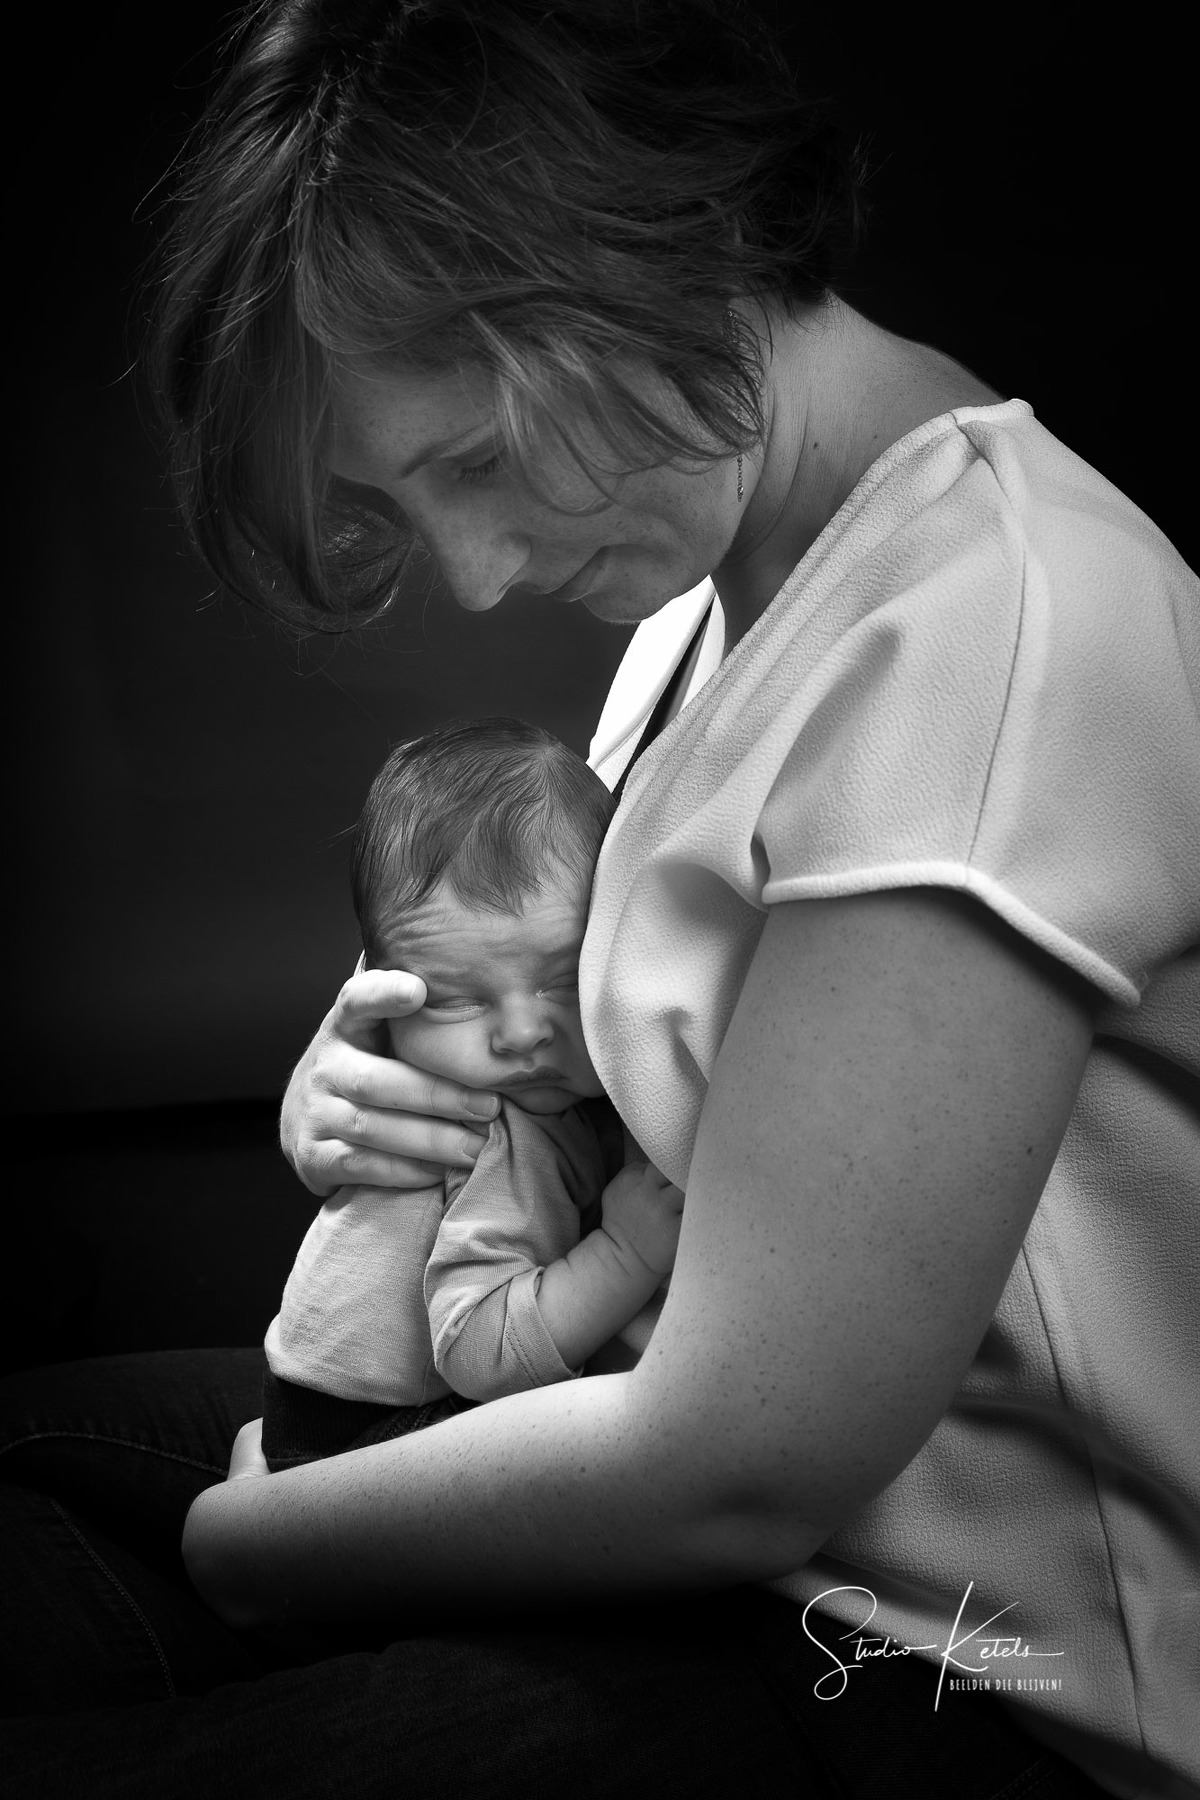 Intiem zwart-wit-portret van een pasgeboren babytje in de armen van de moeder. Zij kijkt beschermend naar haar babytje, dat ze tegen zich aan houdt. Portret door Studio Ketels